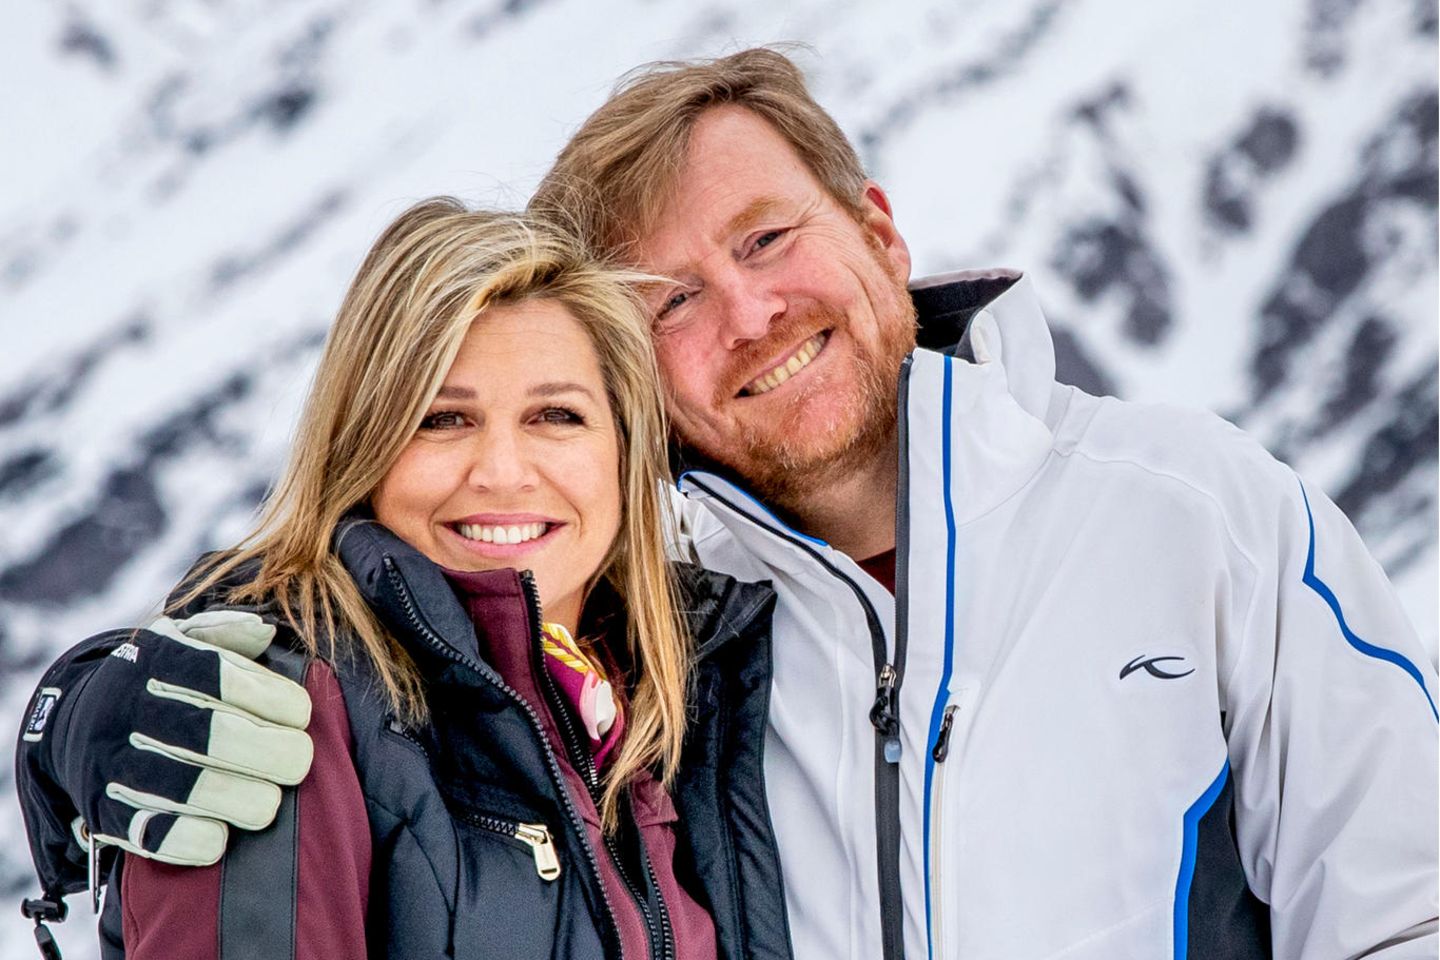 Königin Máxima und König Willem-Alexander – hier fotografiert 2020 in Lech – mögen Wintersport. Das zeigt sich auch in einem Post am Valentinstag.